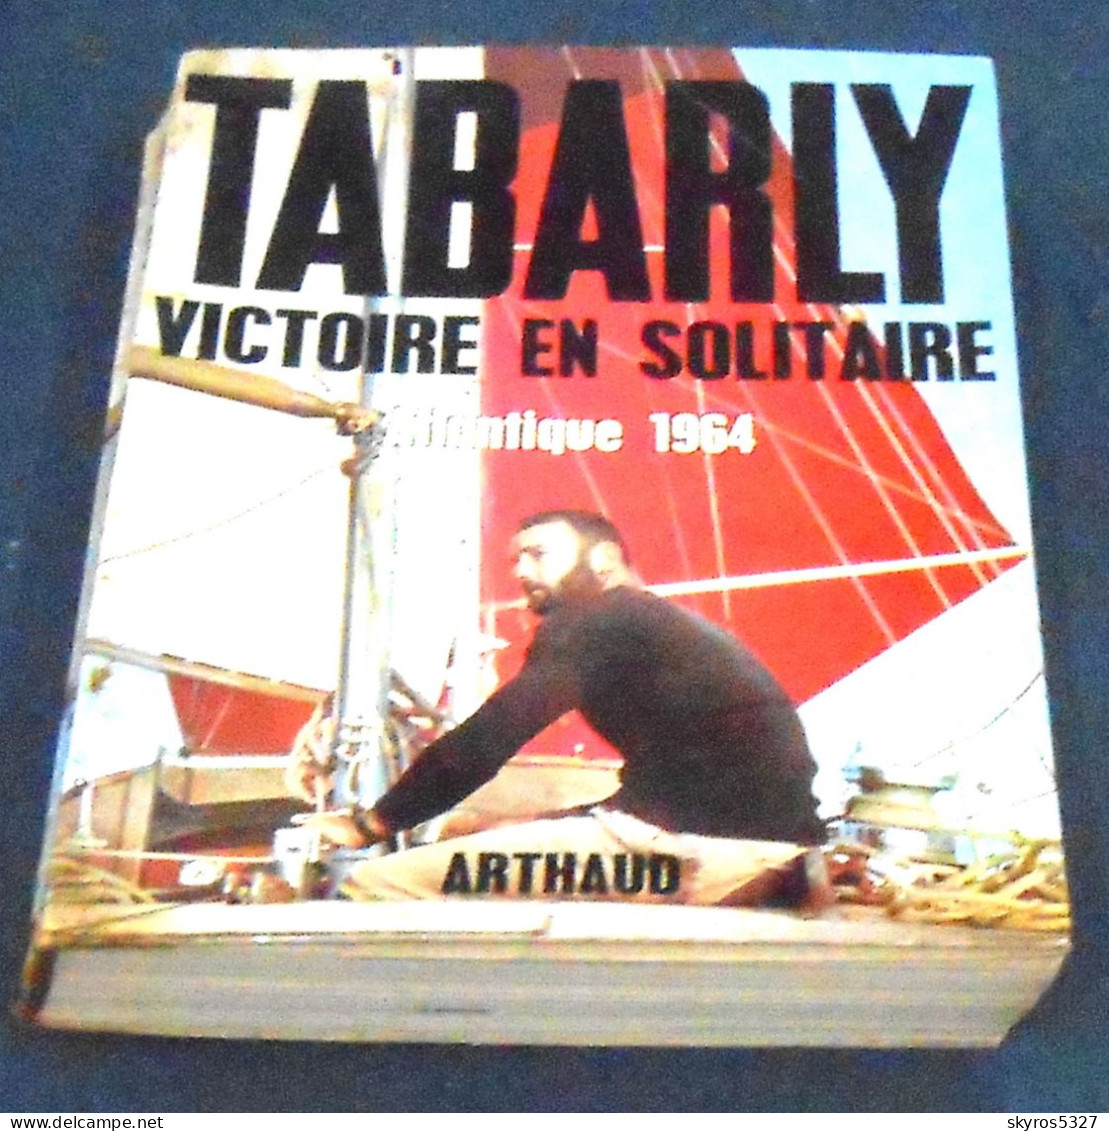 Victoire En Solitaire Atlantique 1964 - Eric Tabarly - Barche